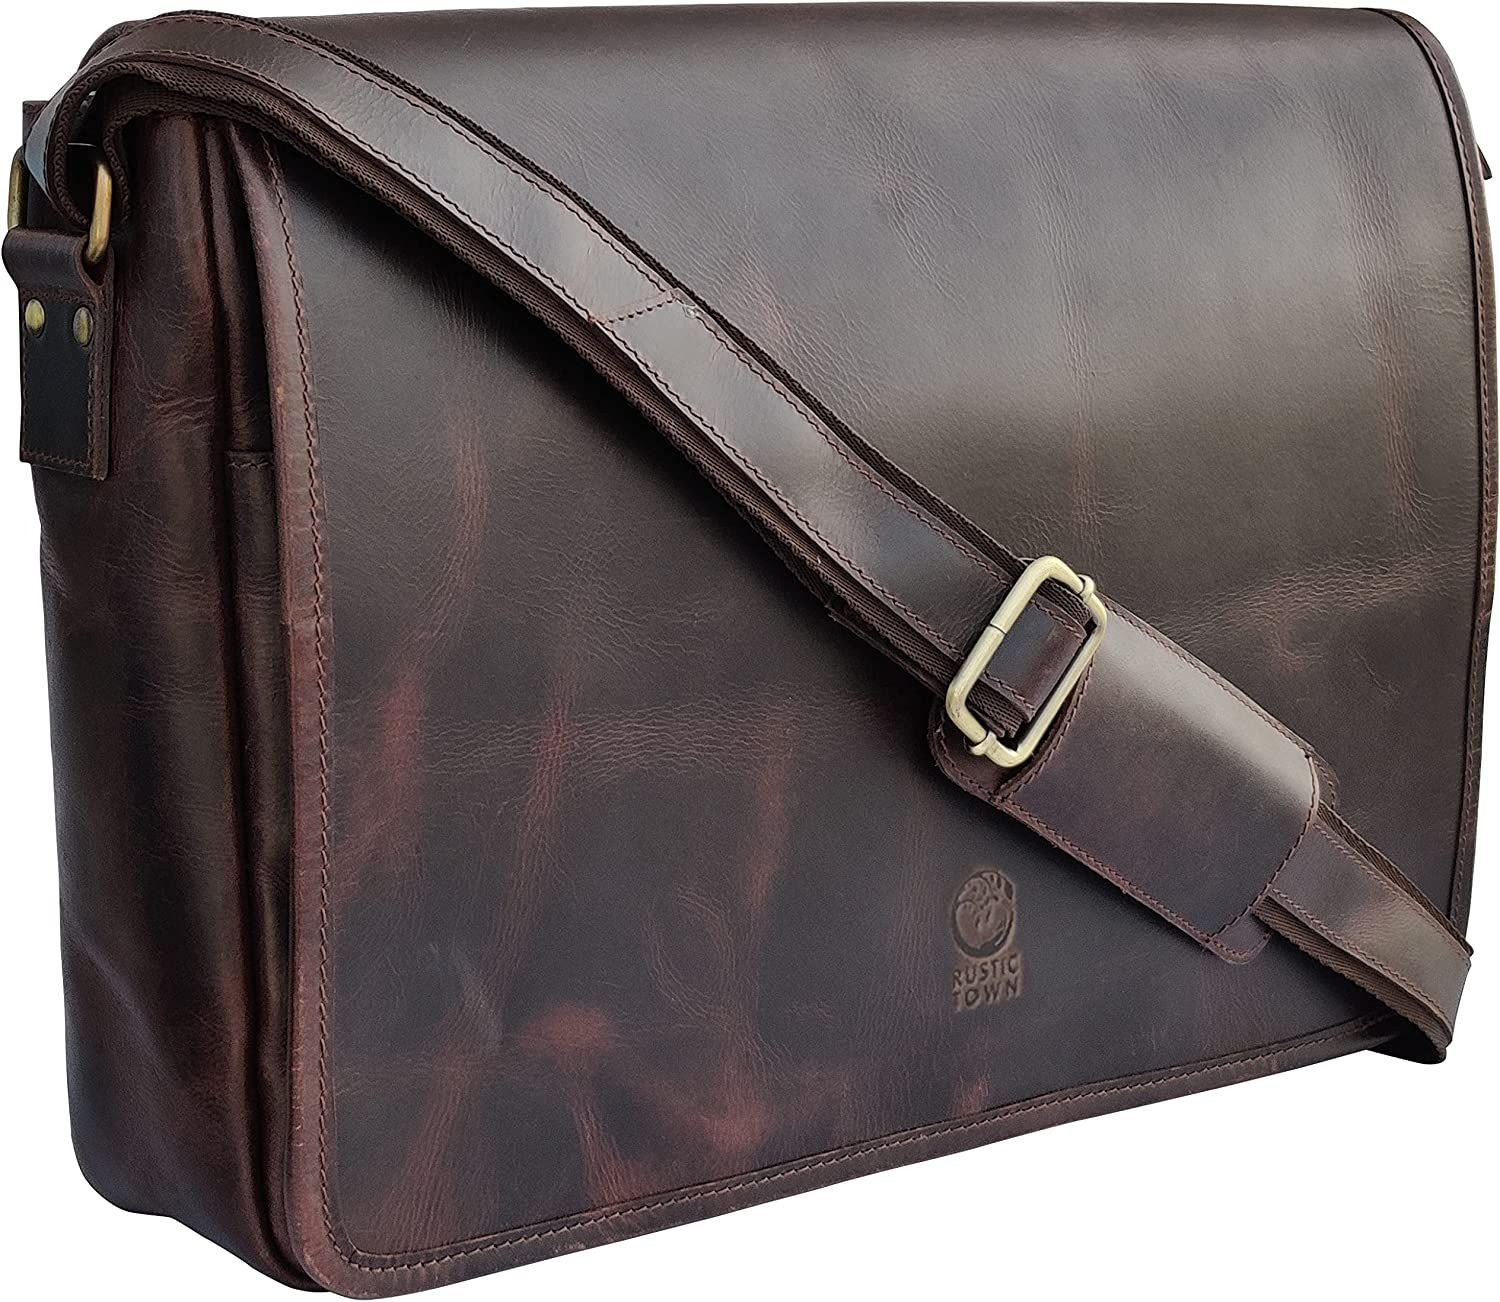 RUSTIC TOWN Leather Messenger Bag for Men Women - Top Grain Dark Brown 